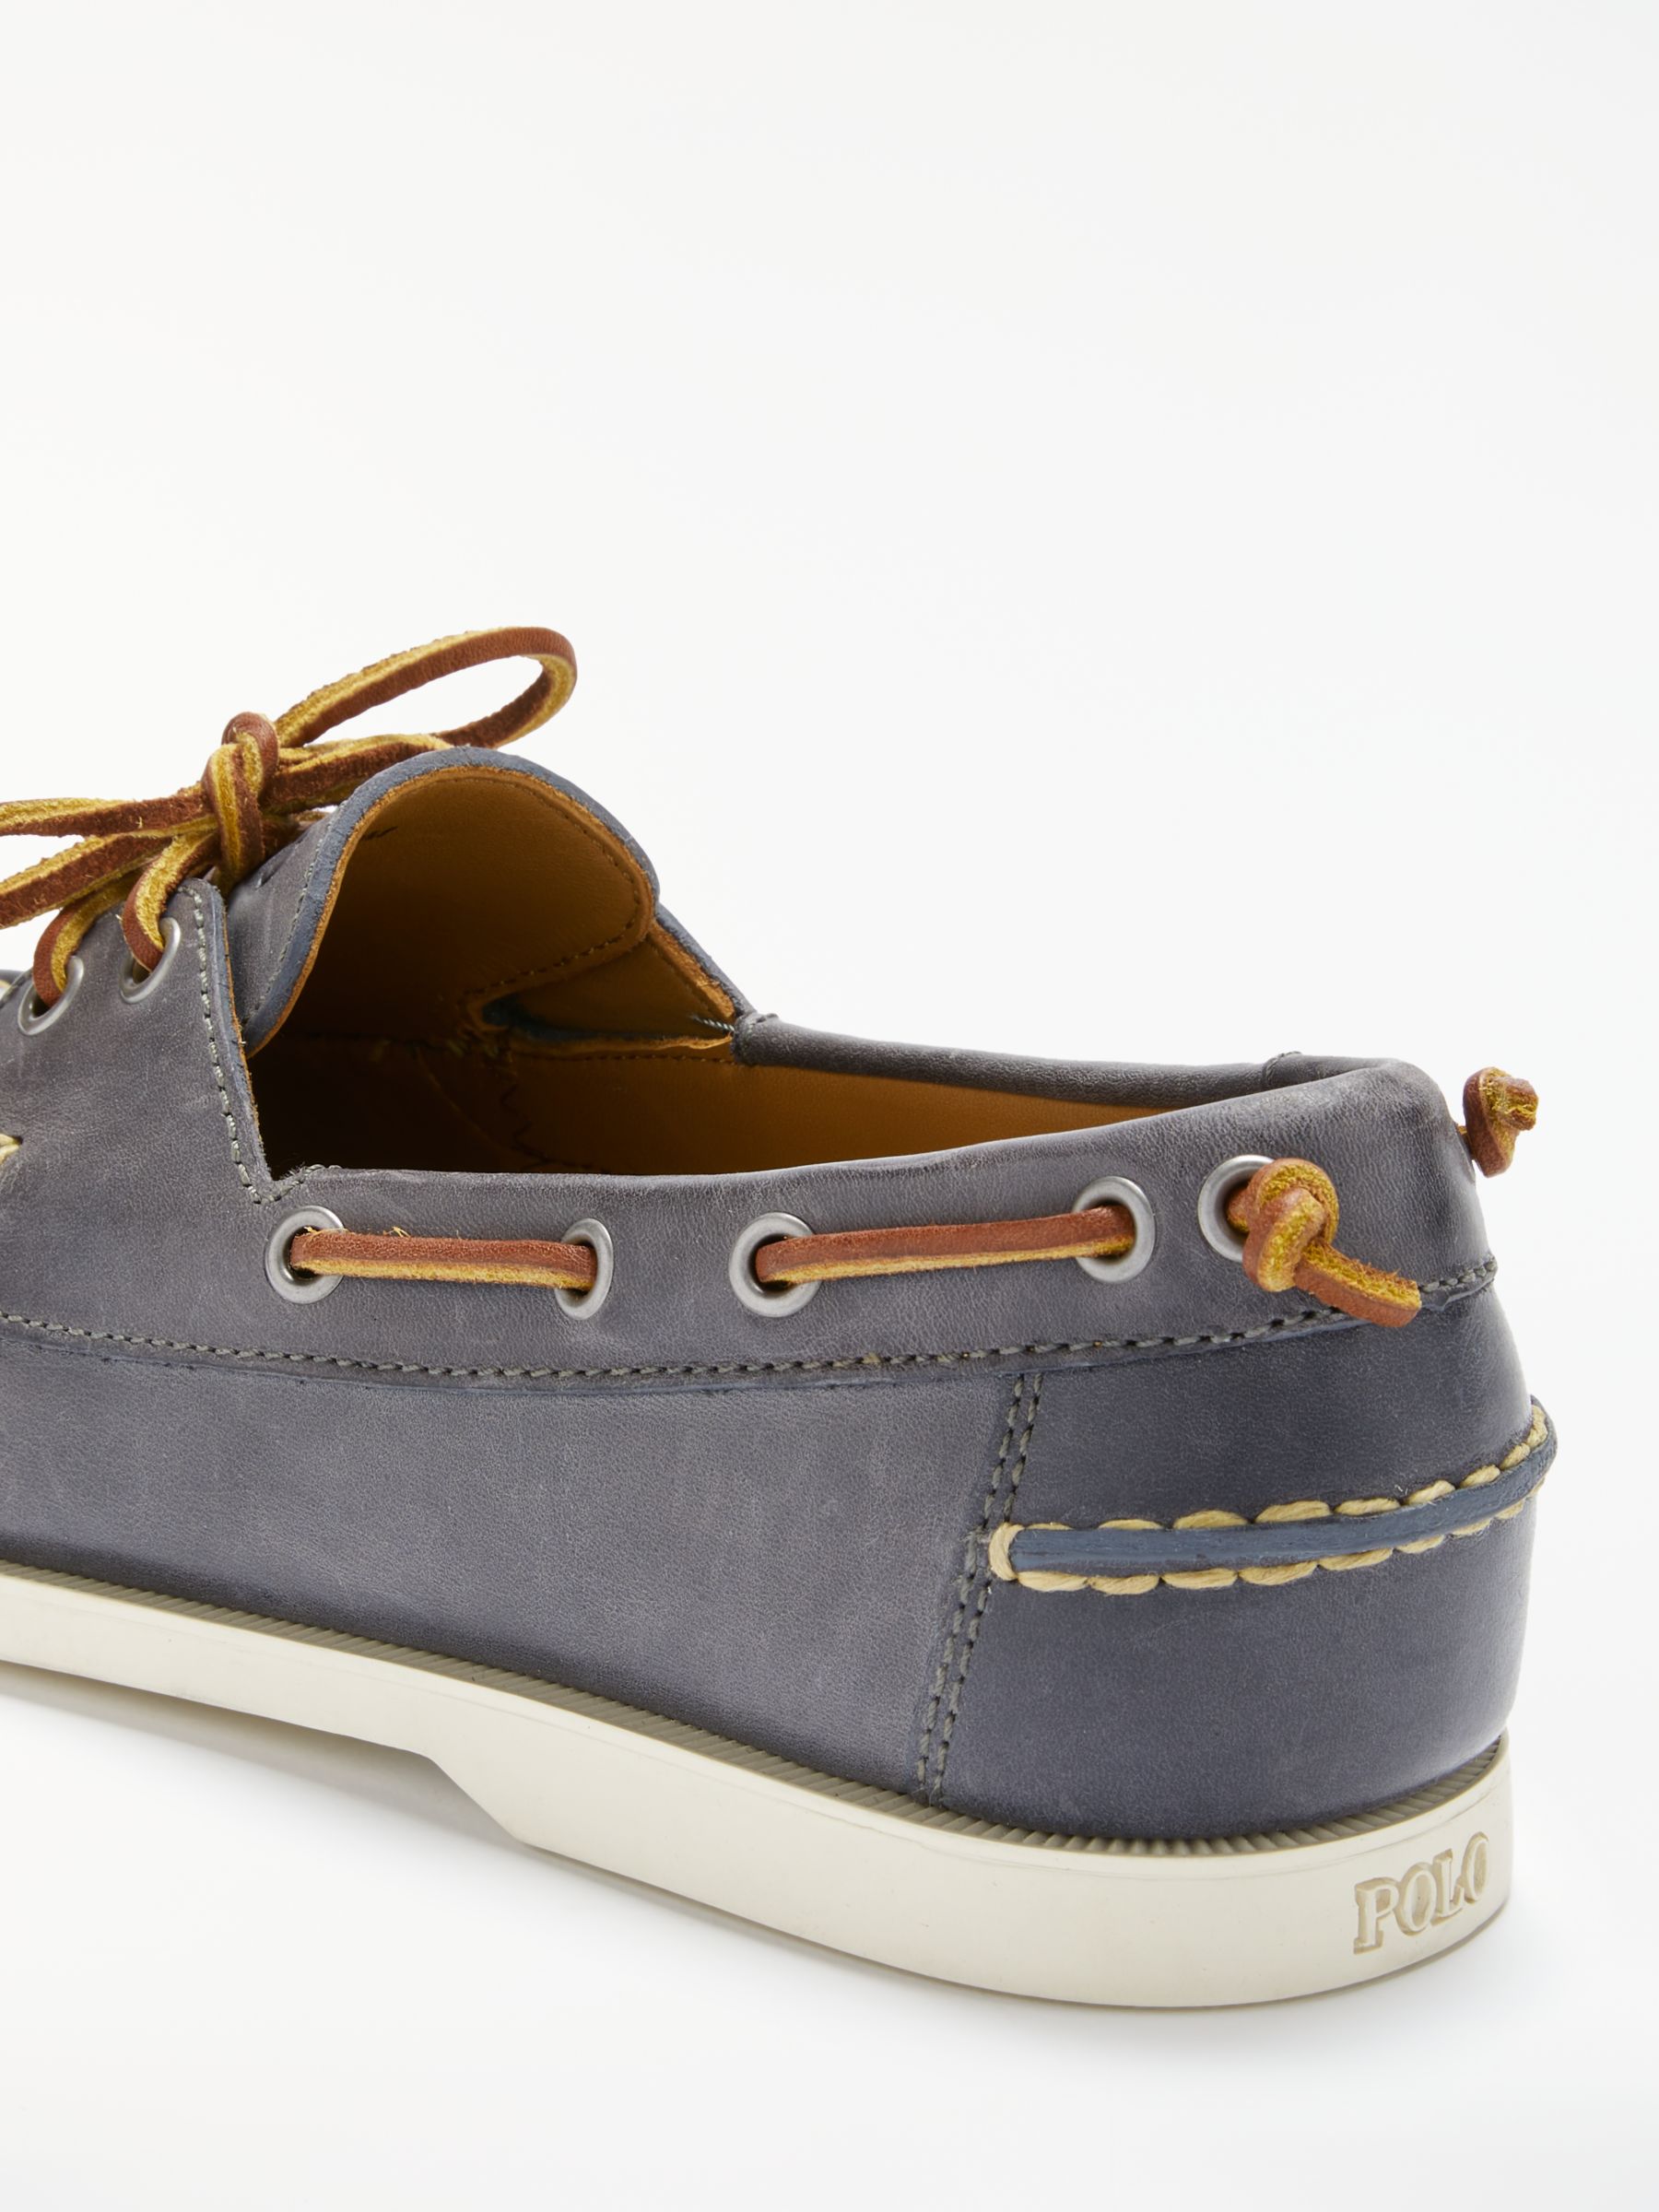 Polo Ralph Lauren Merton Boat Shoes, Blue